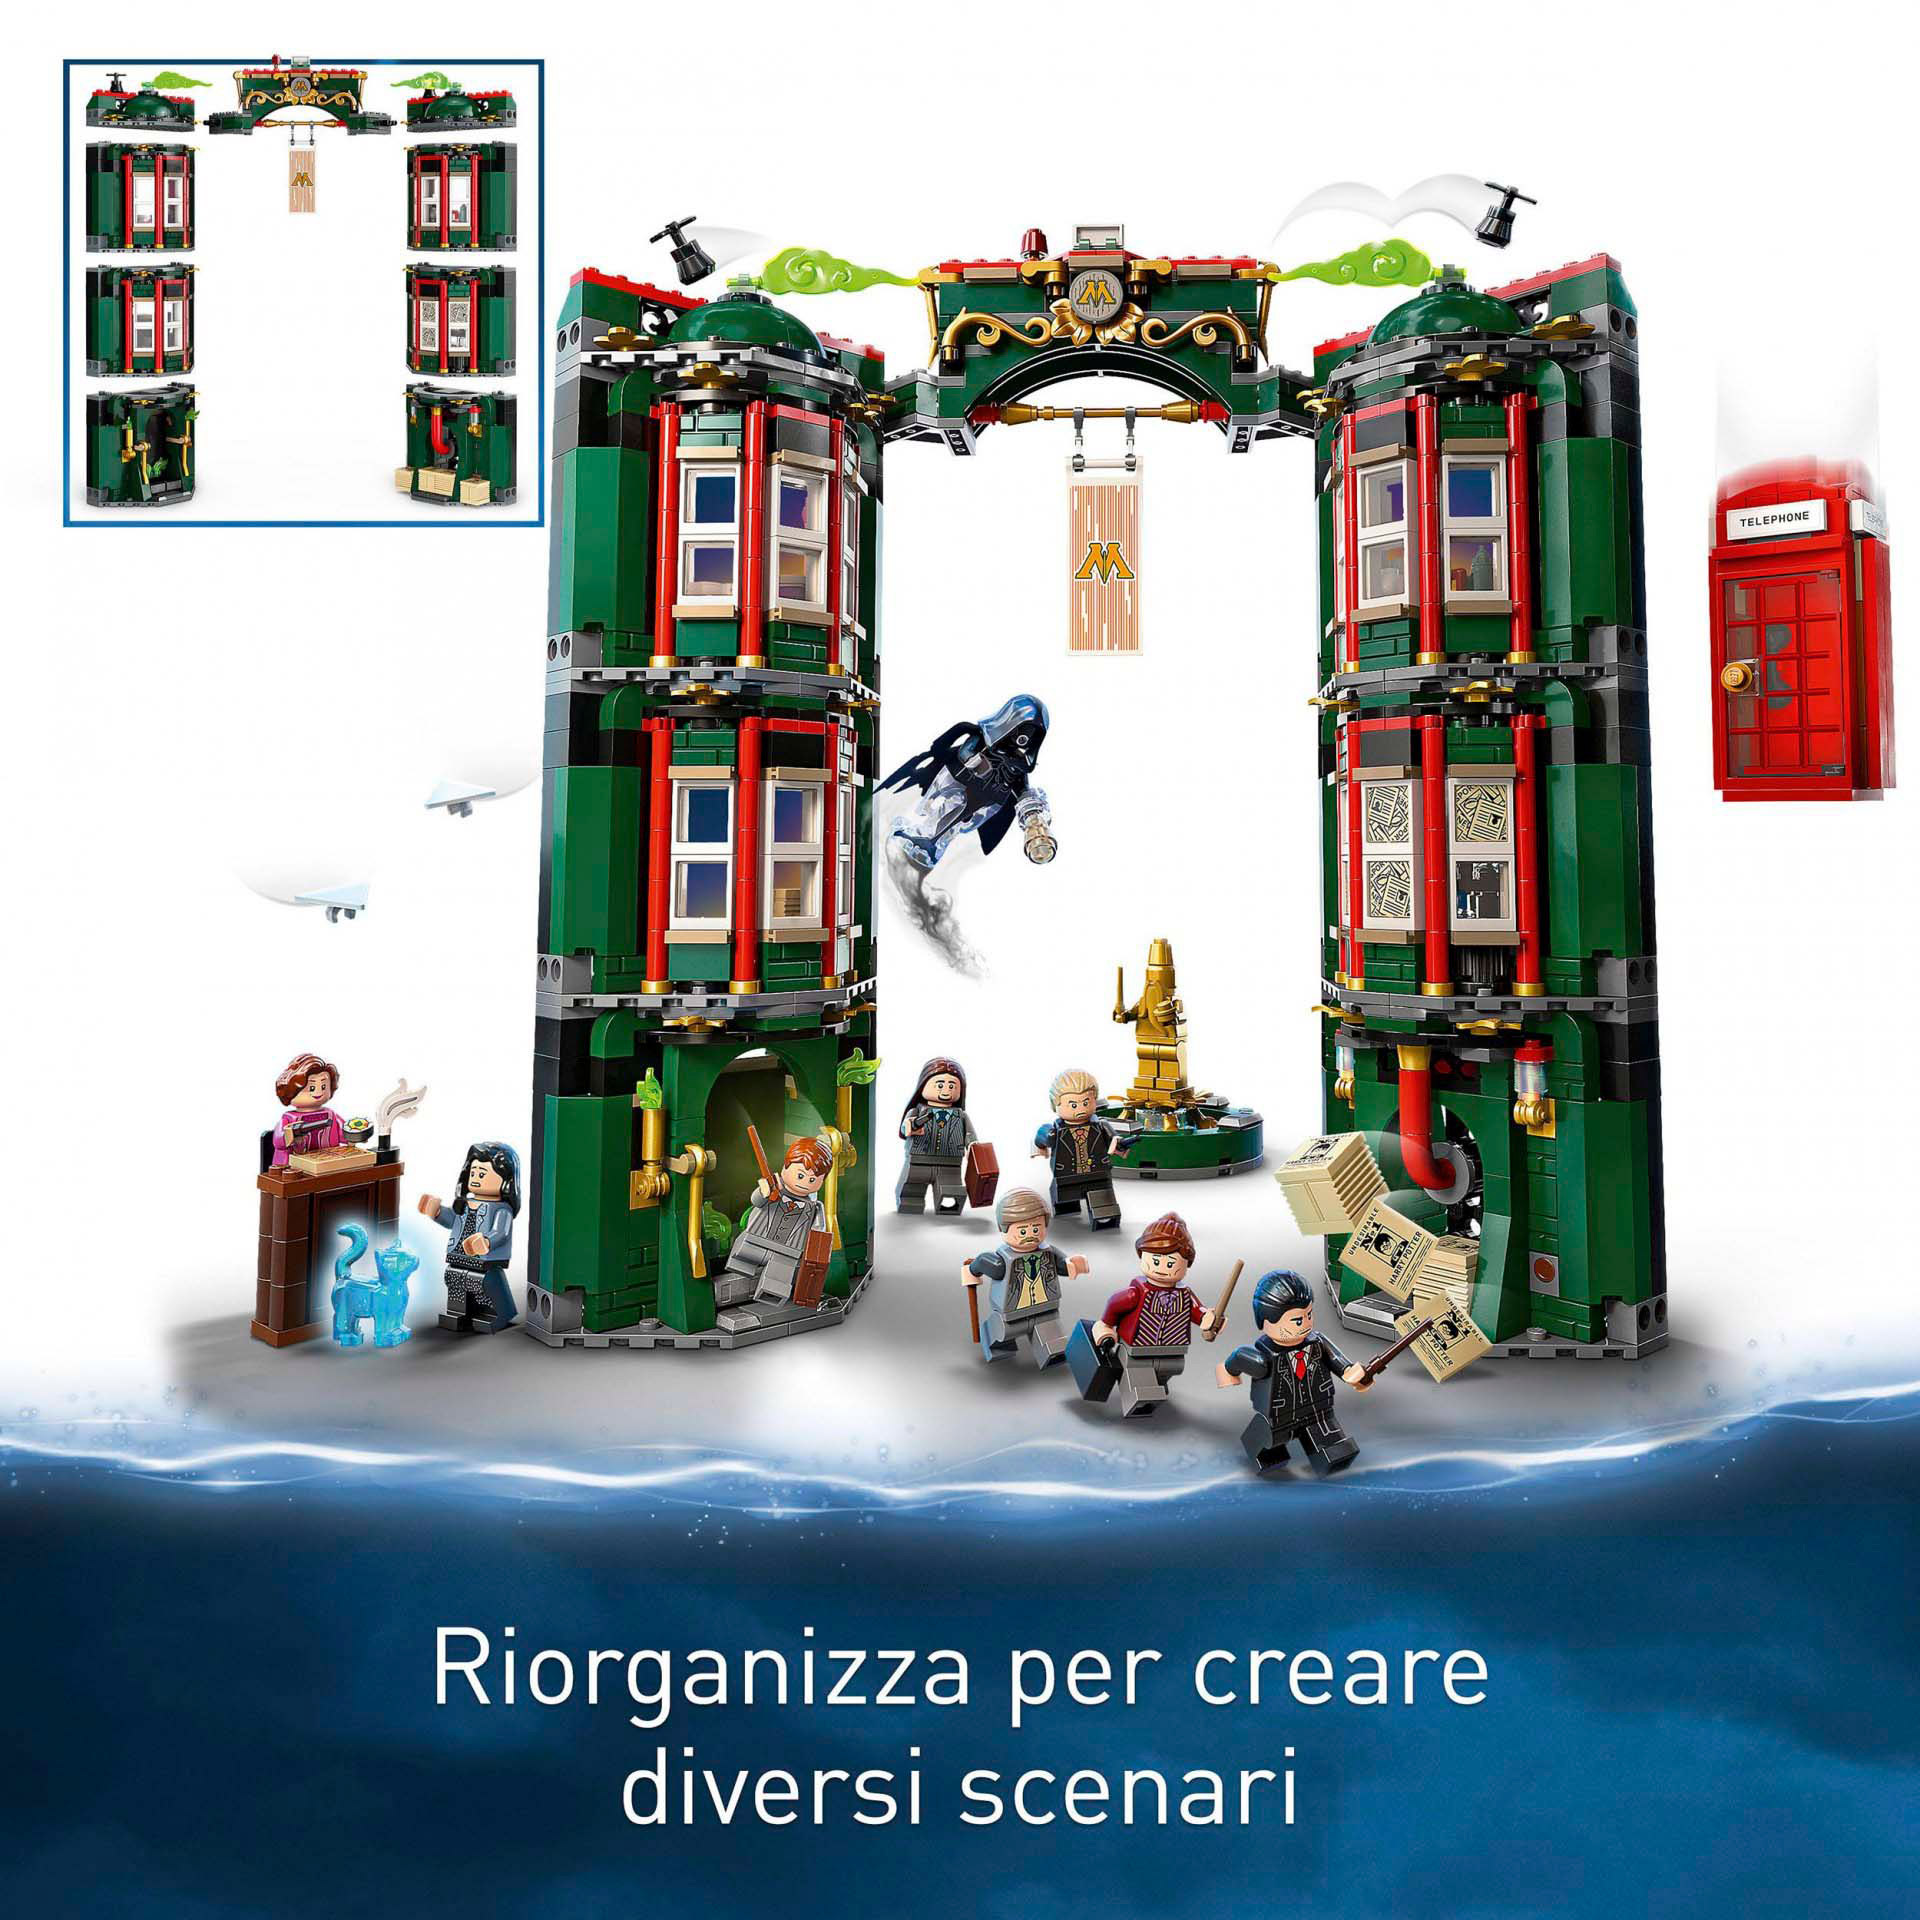 LEGO Harry Potter Ministero della Magia, Modellino da Costruire Modulare, 12 Min 76403, , large